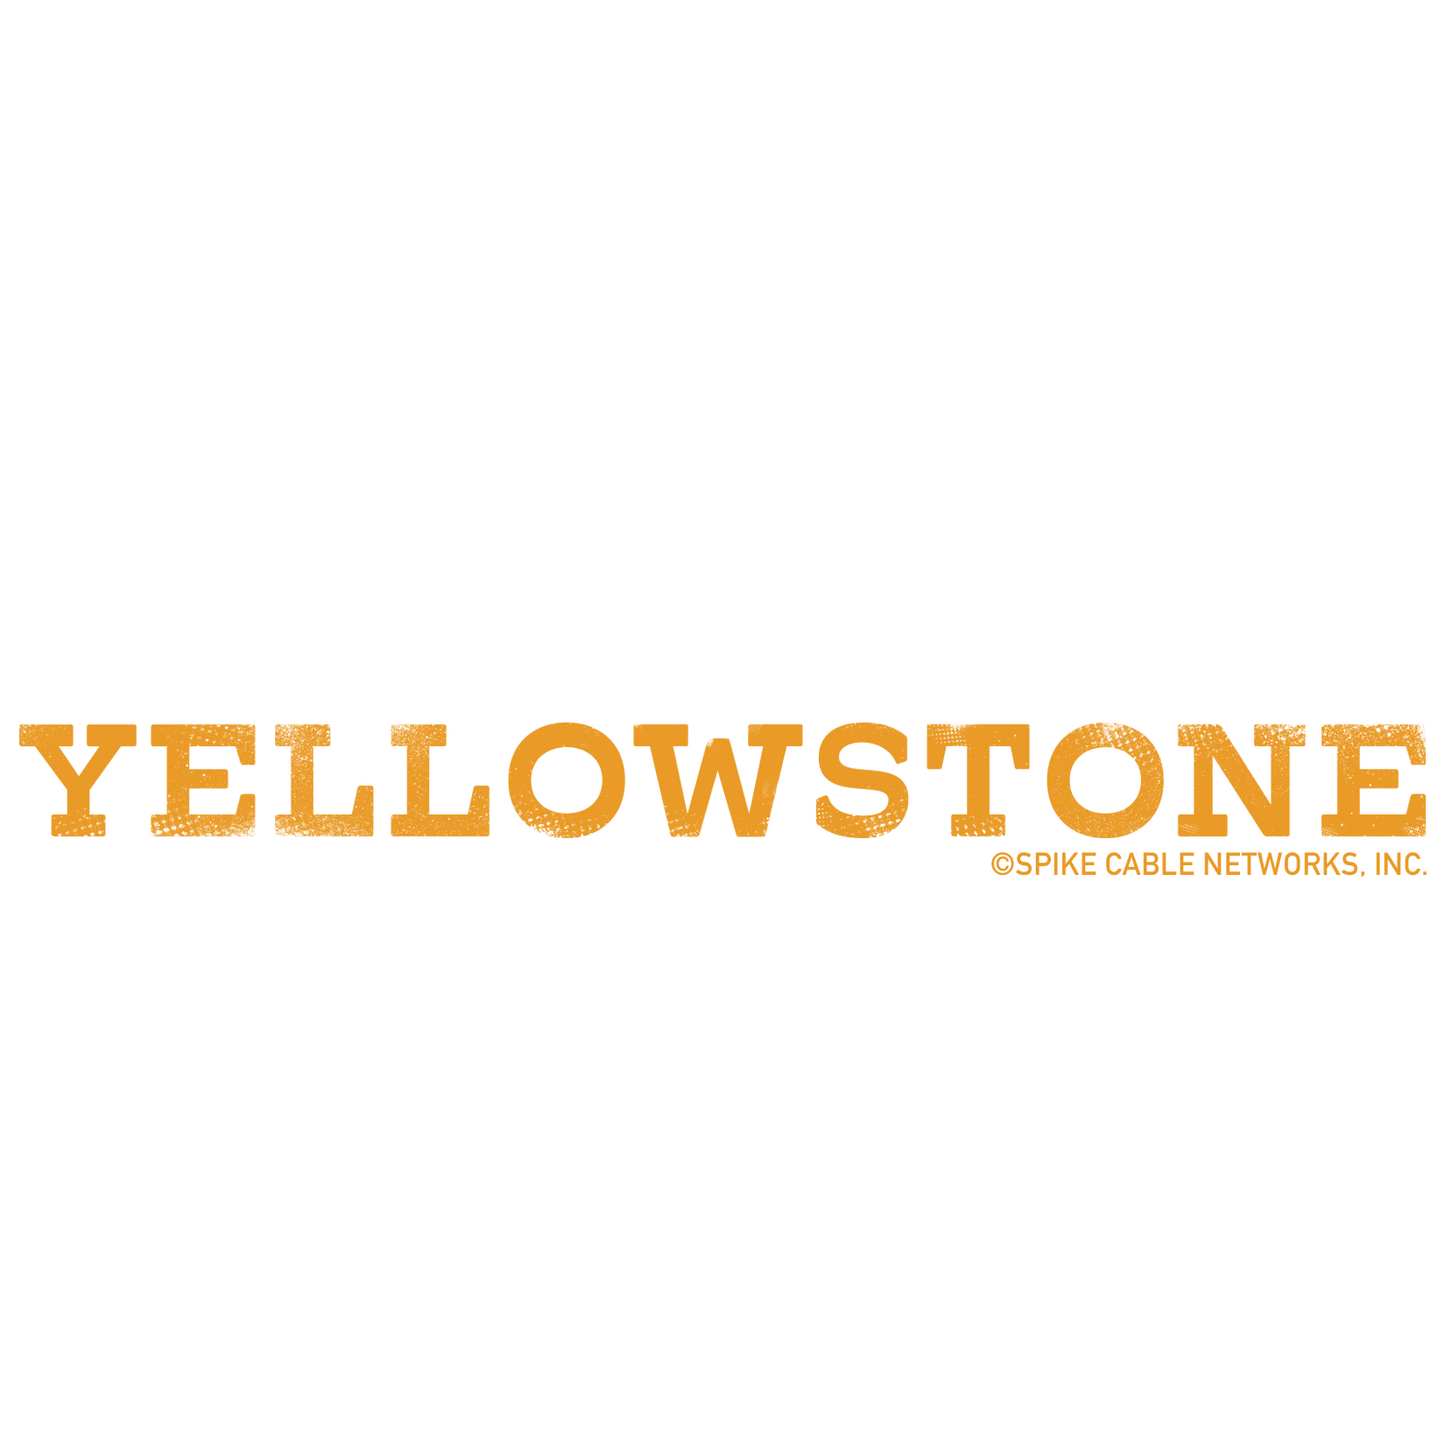 Yellowstone Logo Die Cut Sticker